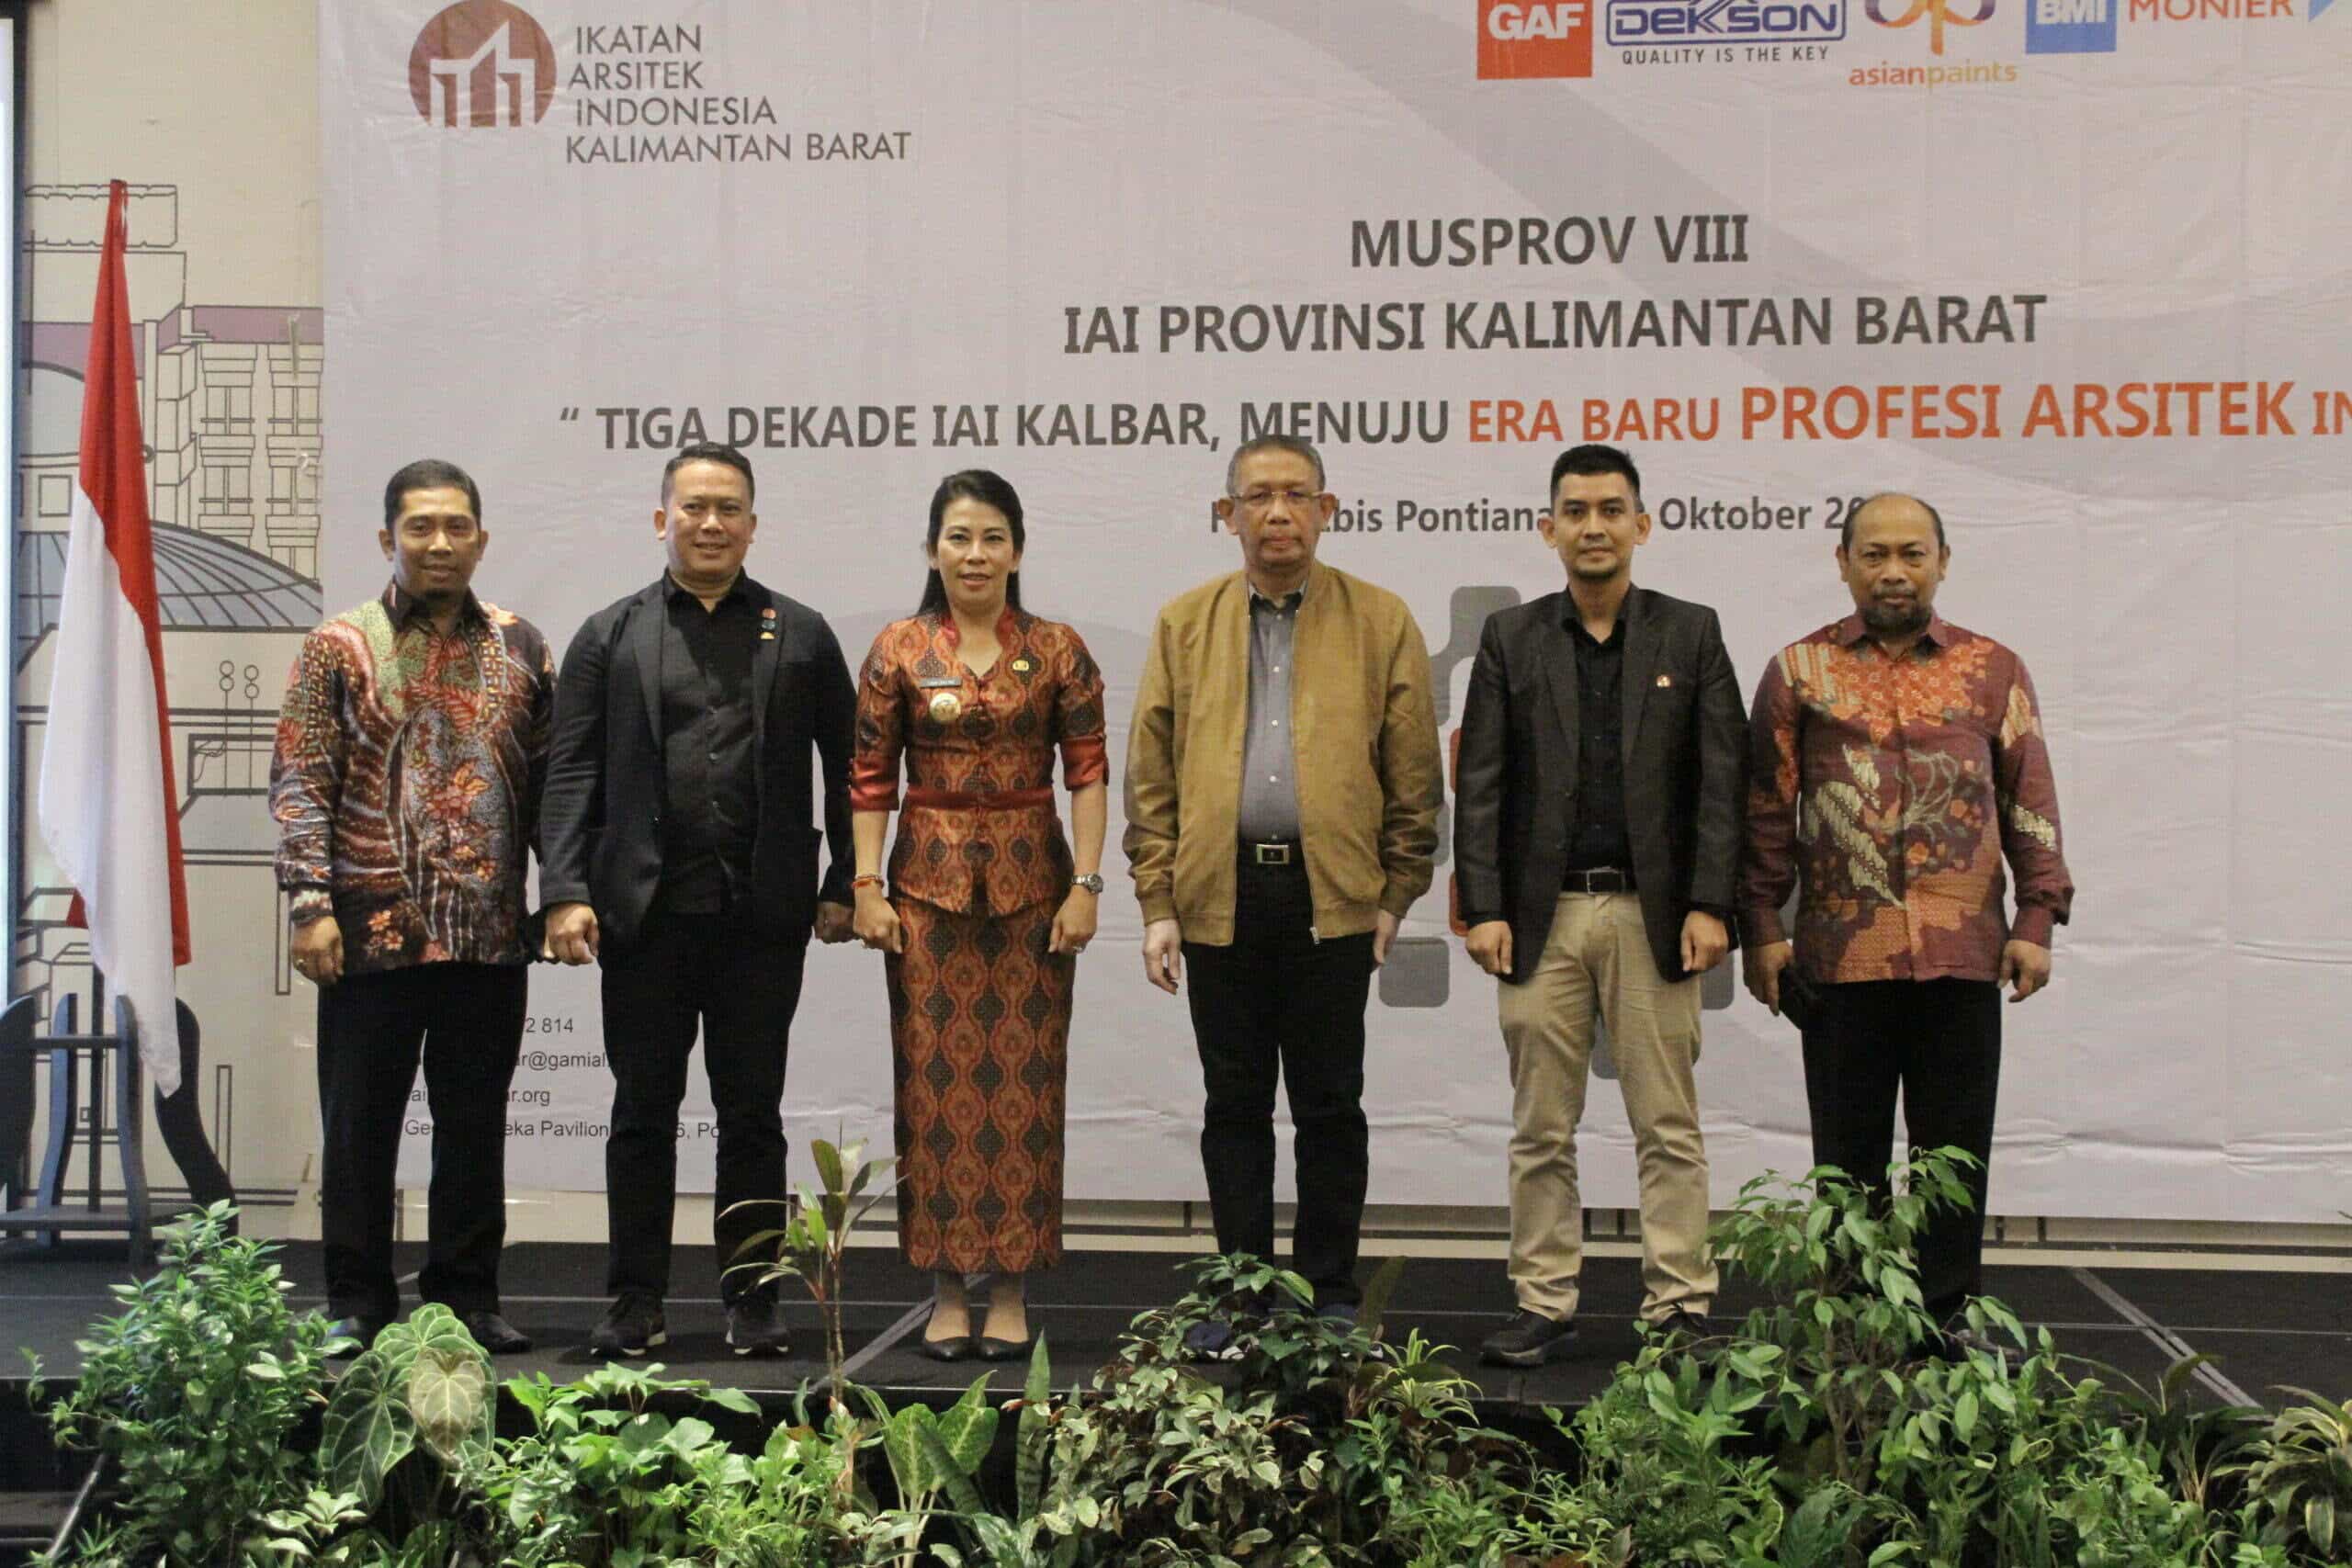 Gubernur Kalbar, Sutarmidji berfoto bersama di sela-sela pembukaan Musprov ke-VIII Ikatan Arsitek Indonesia (IAI) Provinsi Kalbar, di Hotel Ibis Pontianak, Sabtu (29/10/2022). (Foto: Biro Adpim For KalbarOnline.com)